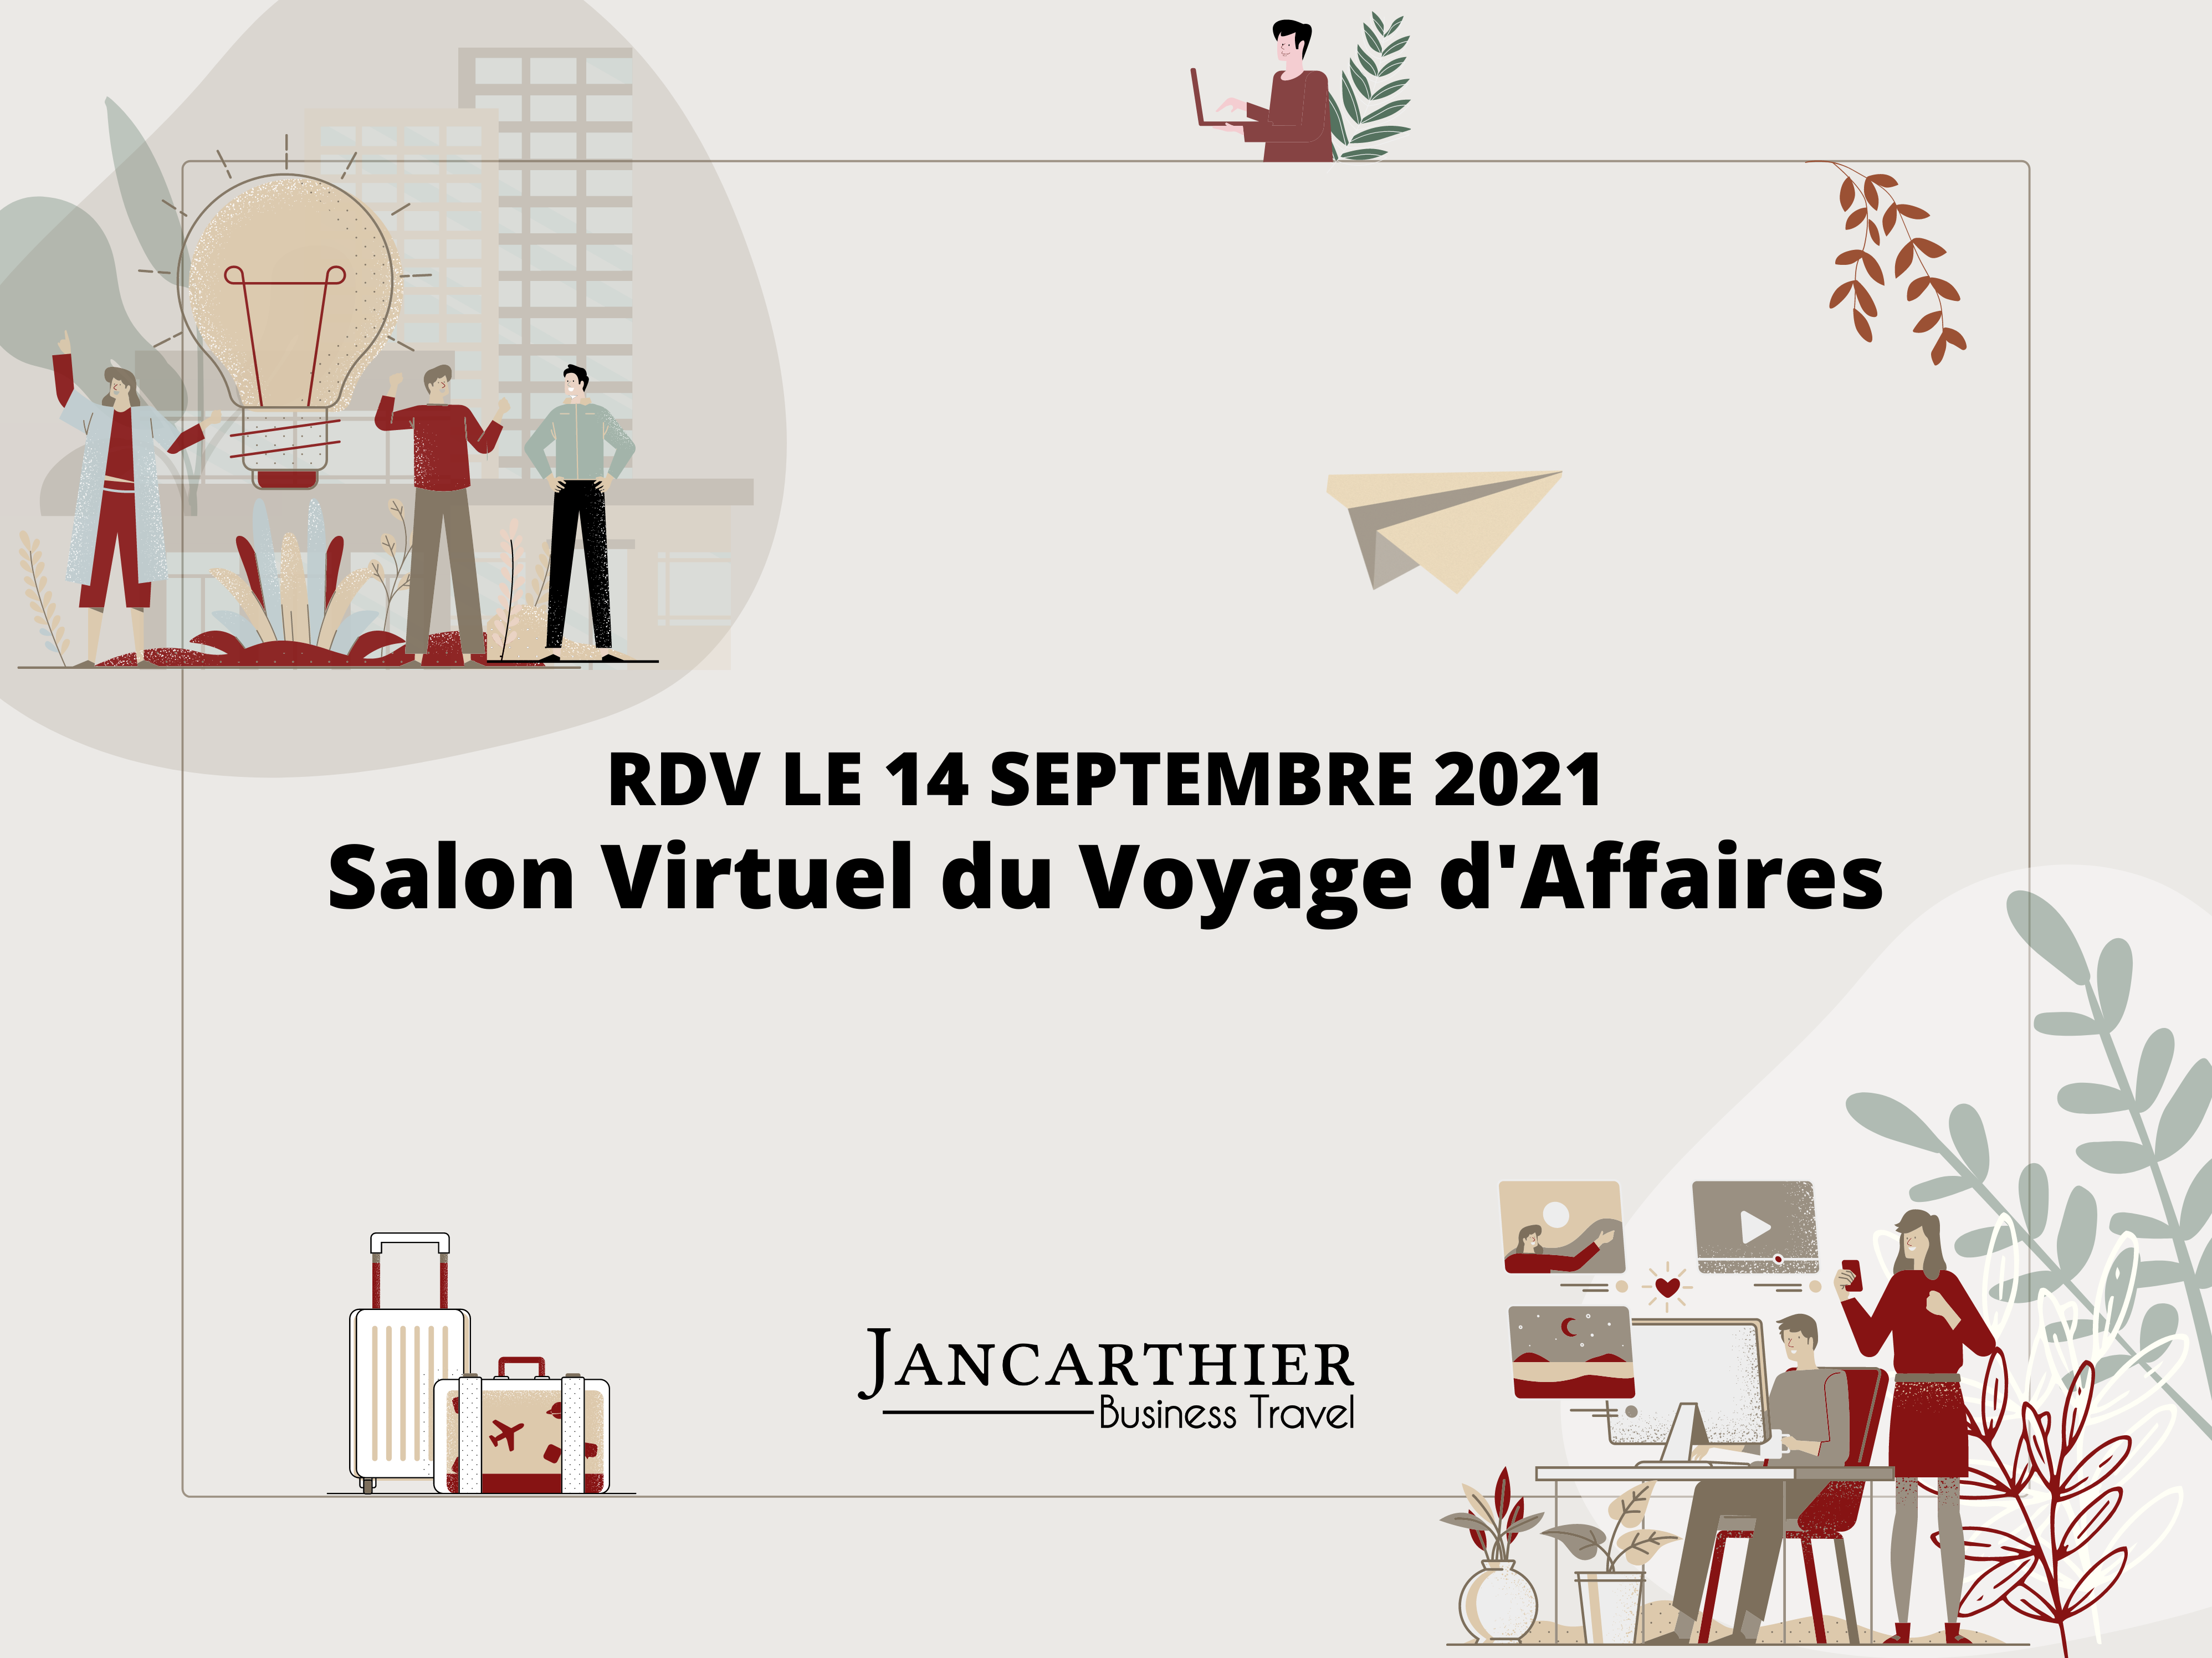 Jancarthier : Un salon virtuel pour relancer le voyage d’affaires